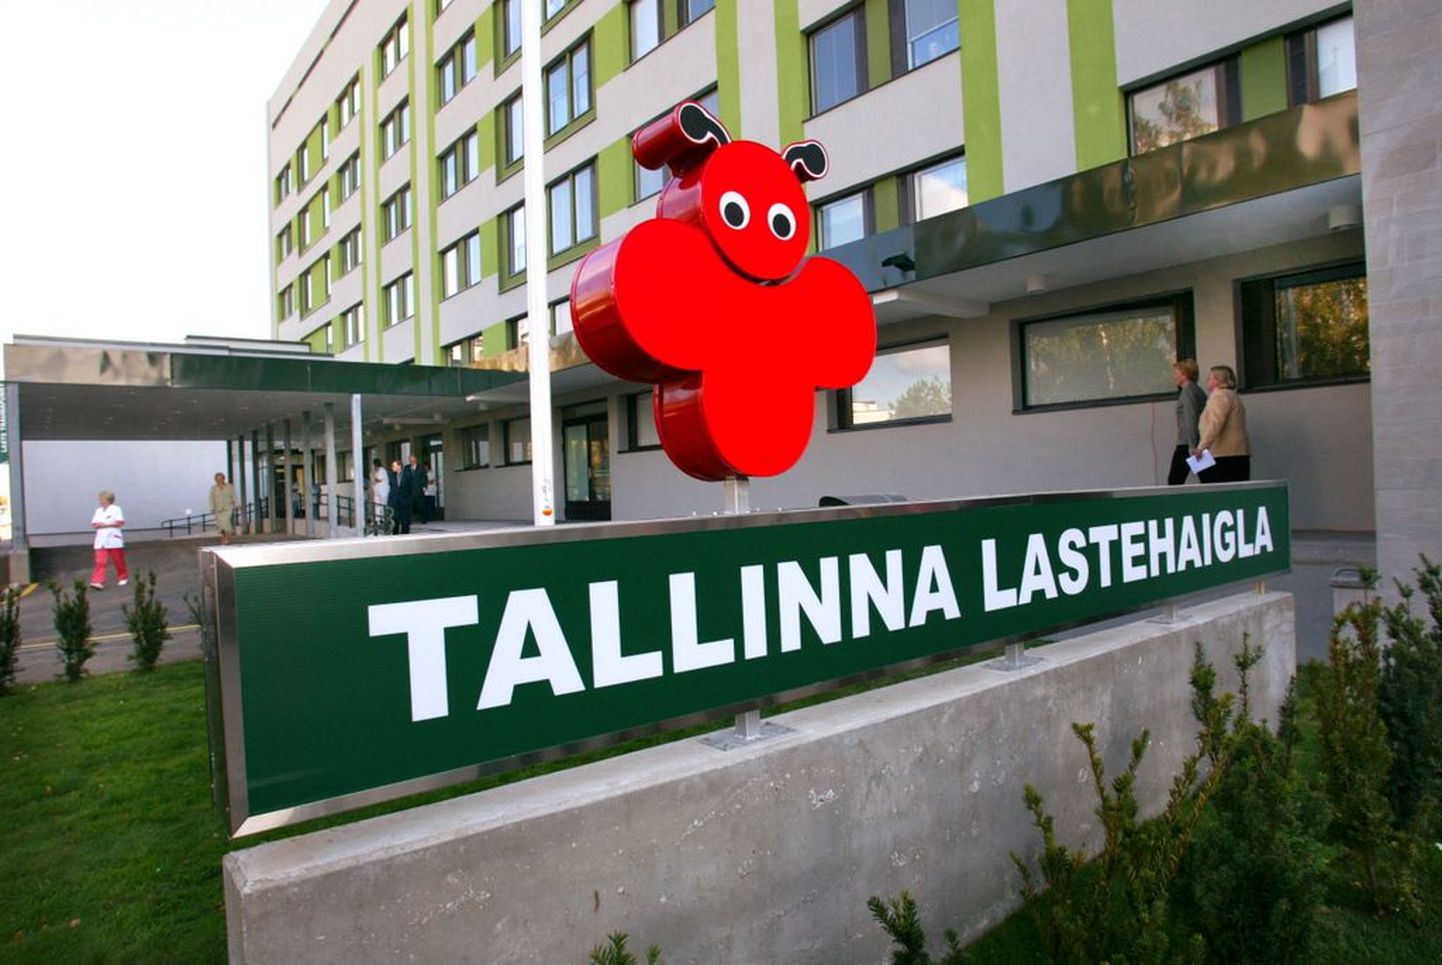 Tallinna lastehaigla